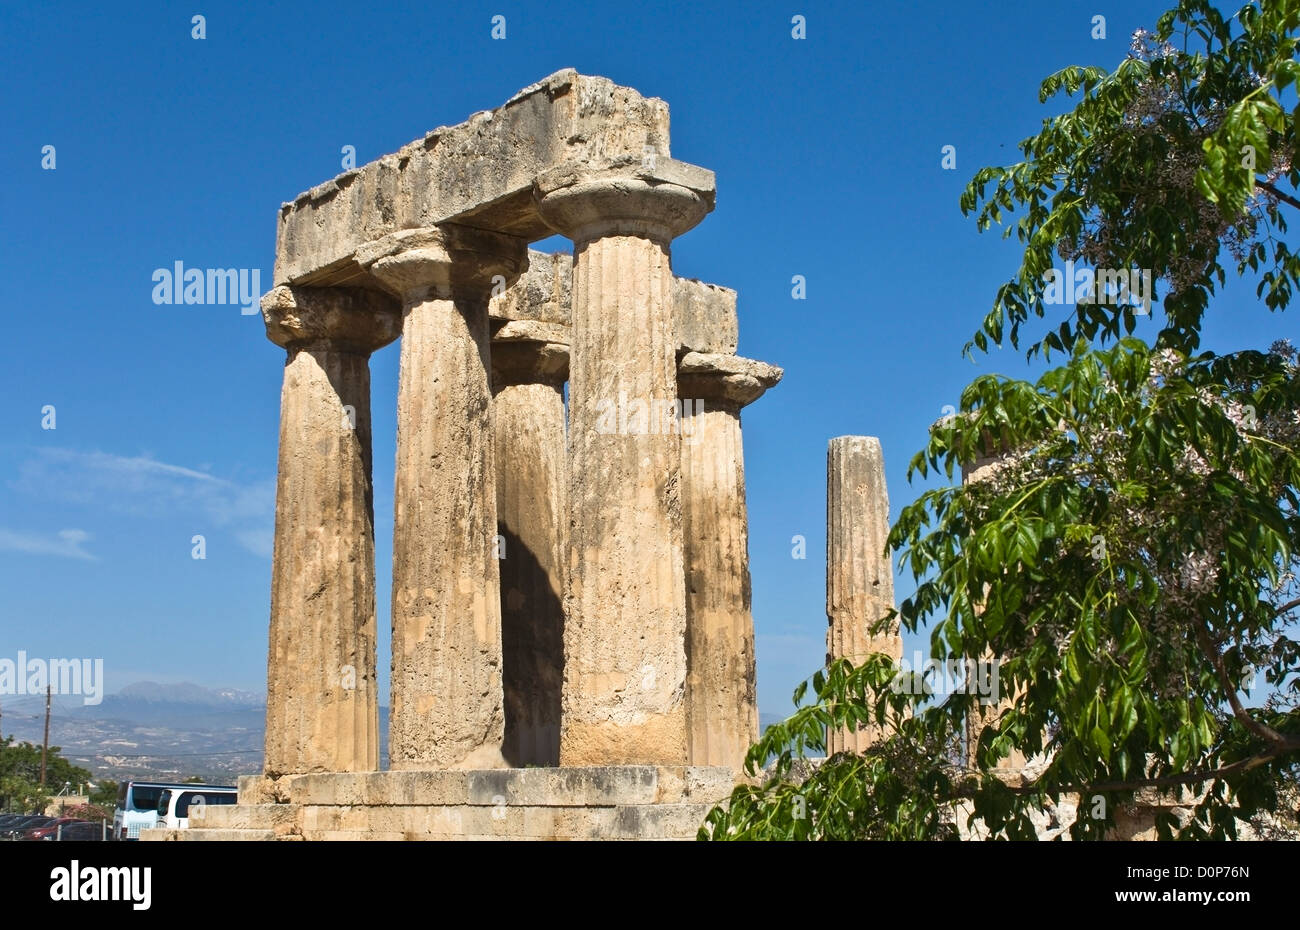 La antigua Corinto, el templo de Apolo, Peloponeso, Grecia Foto de stock